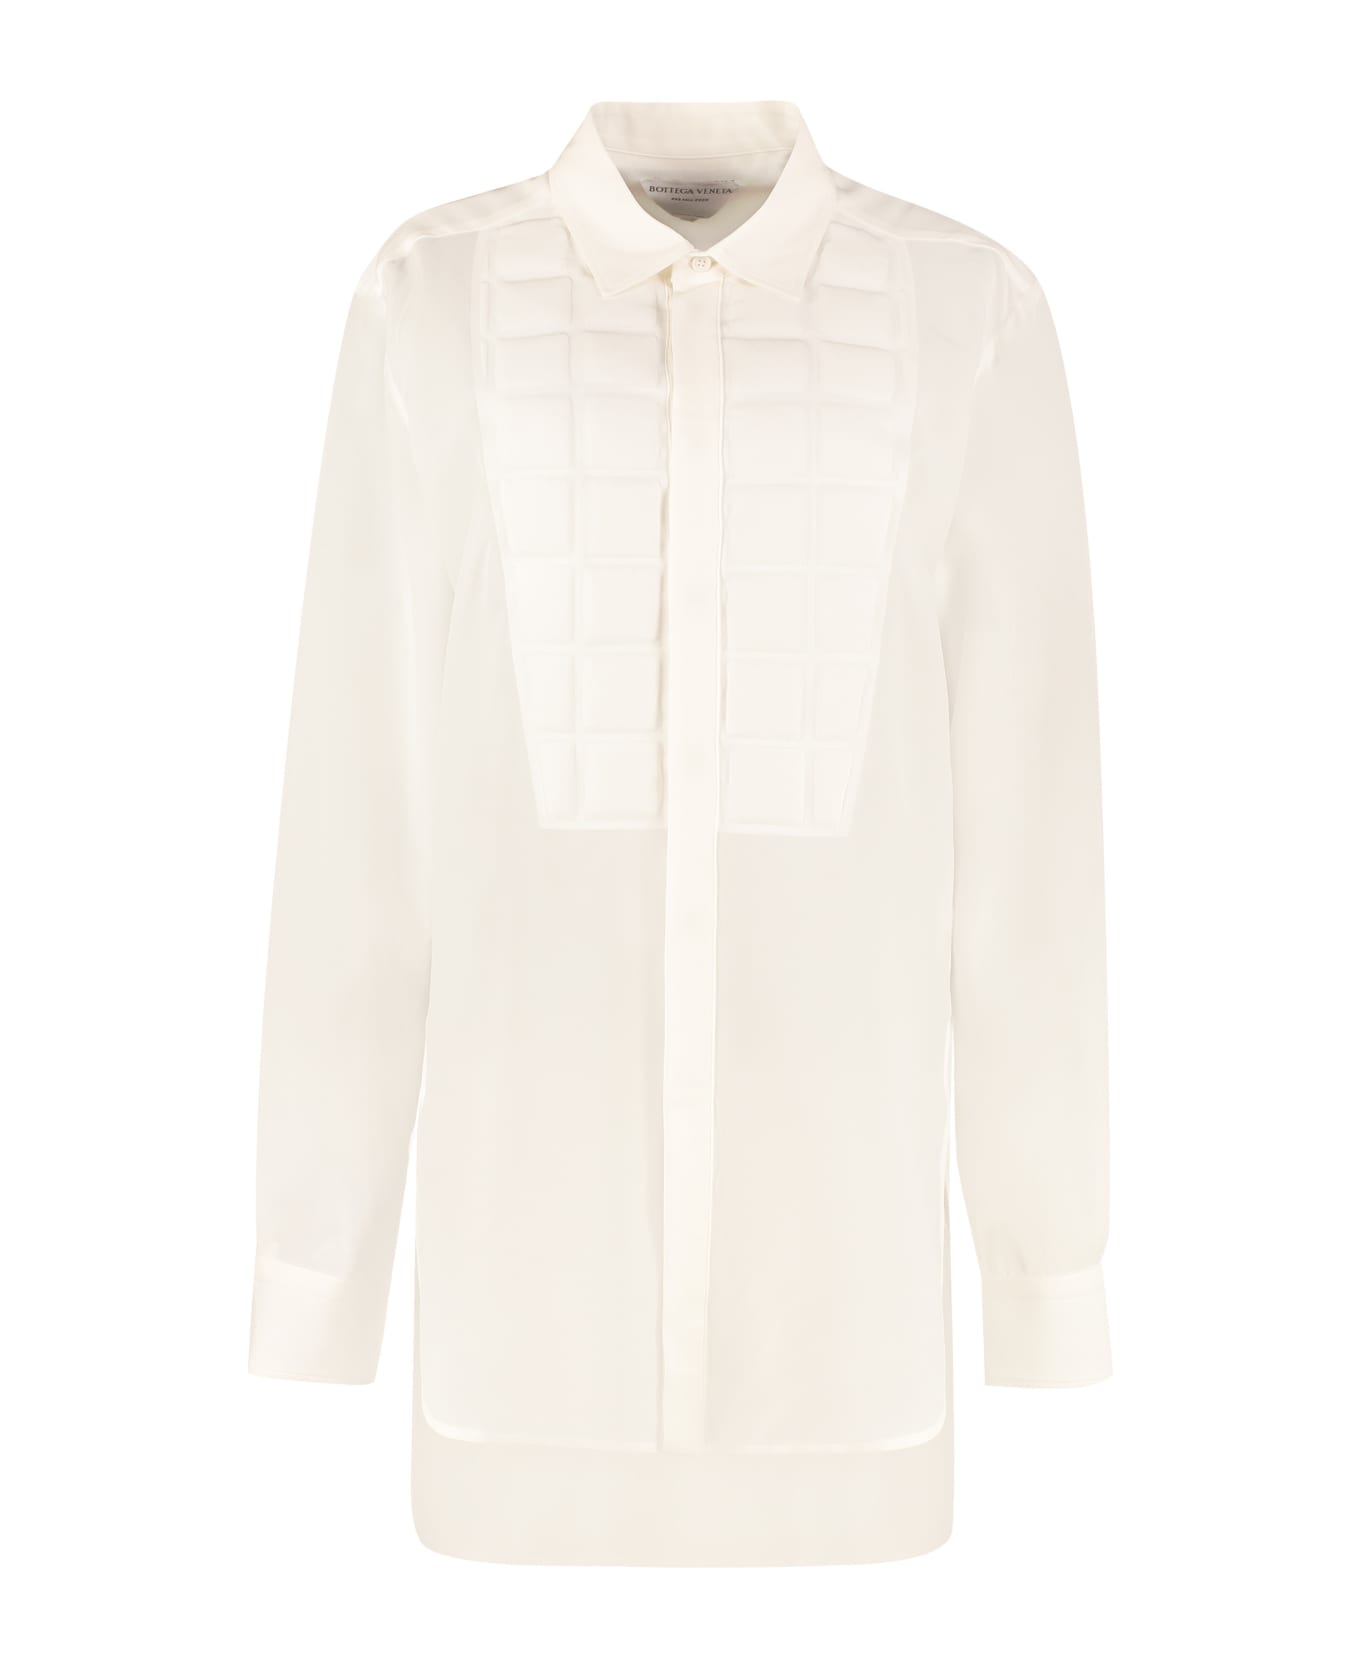 Bottega Veneta Silk Shirt - White シャツ